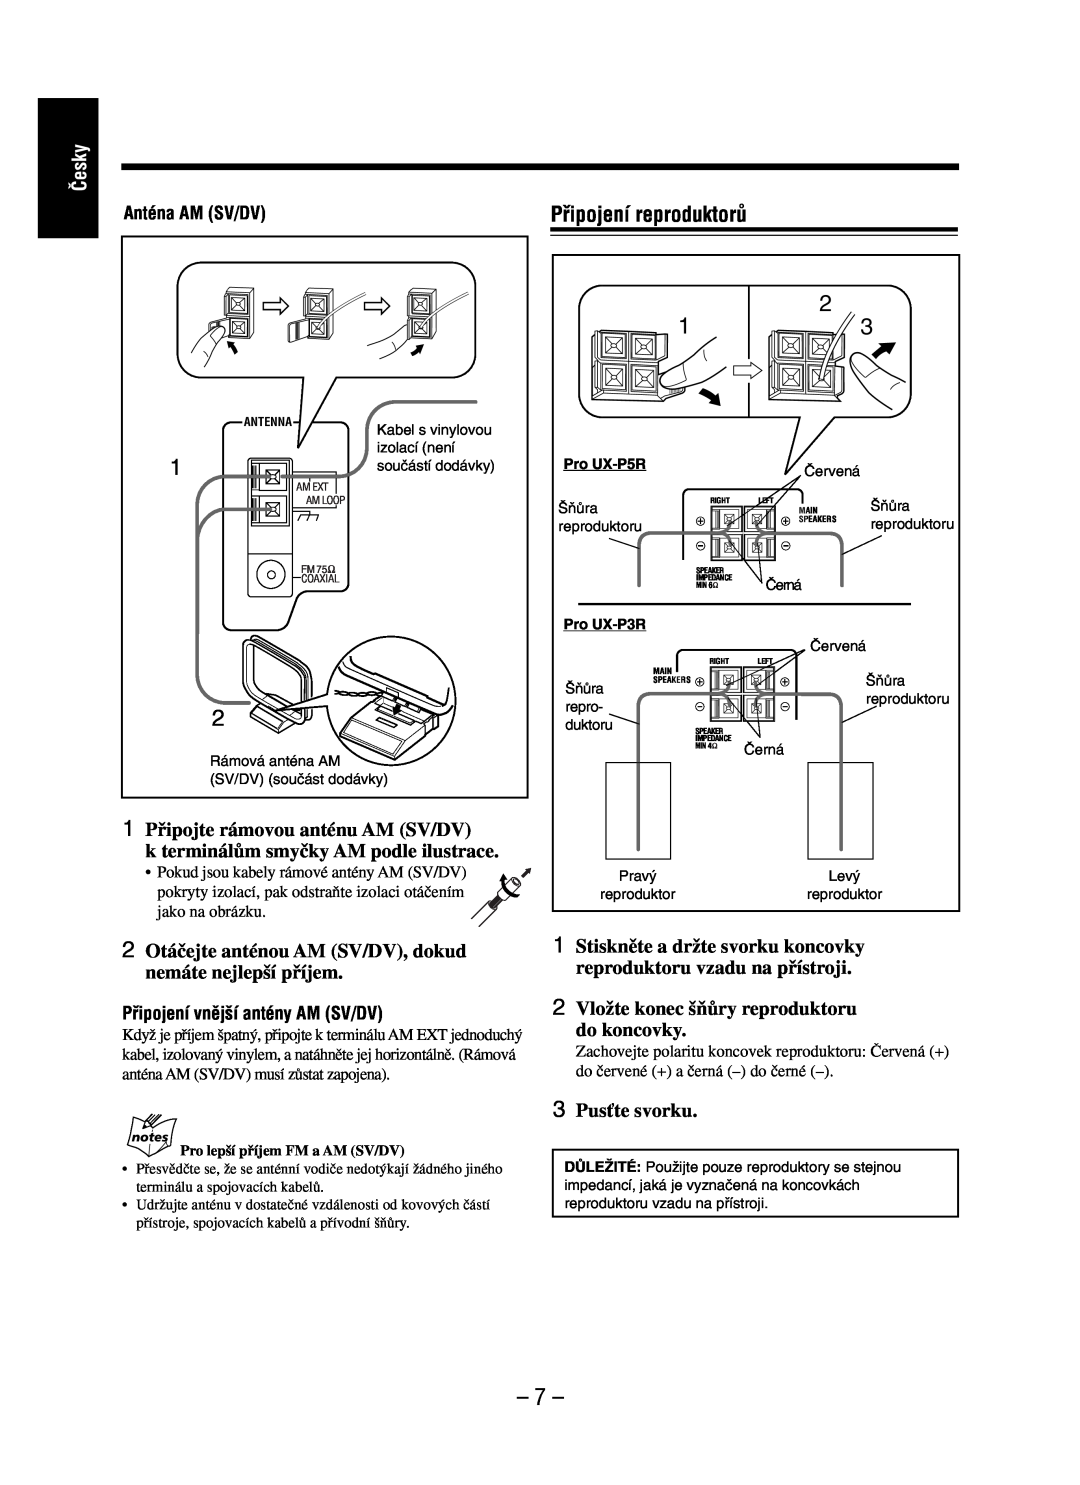 JVC UX-P3R manual Pﬁipojení reproduktorÛ, âesky, 1Pﬁipojte rámovou anténu AM SV/DV, k terminálÛm smyãky AM podle ilustrace 